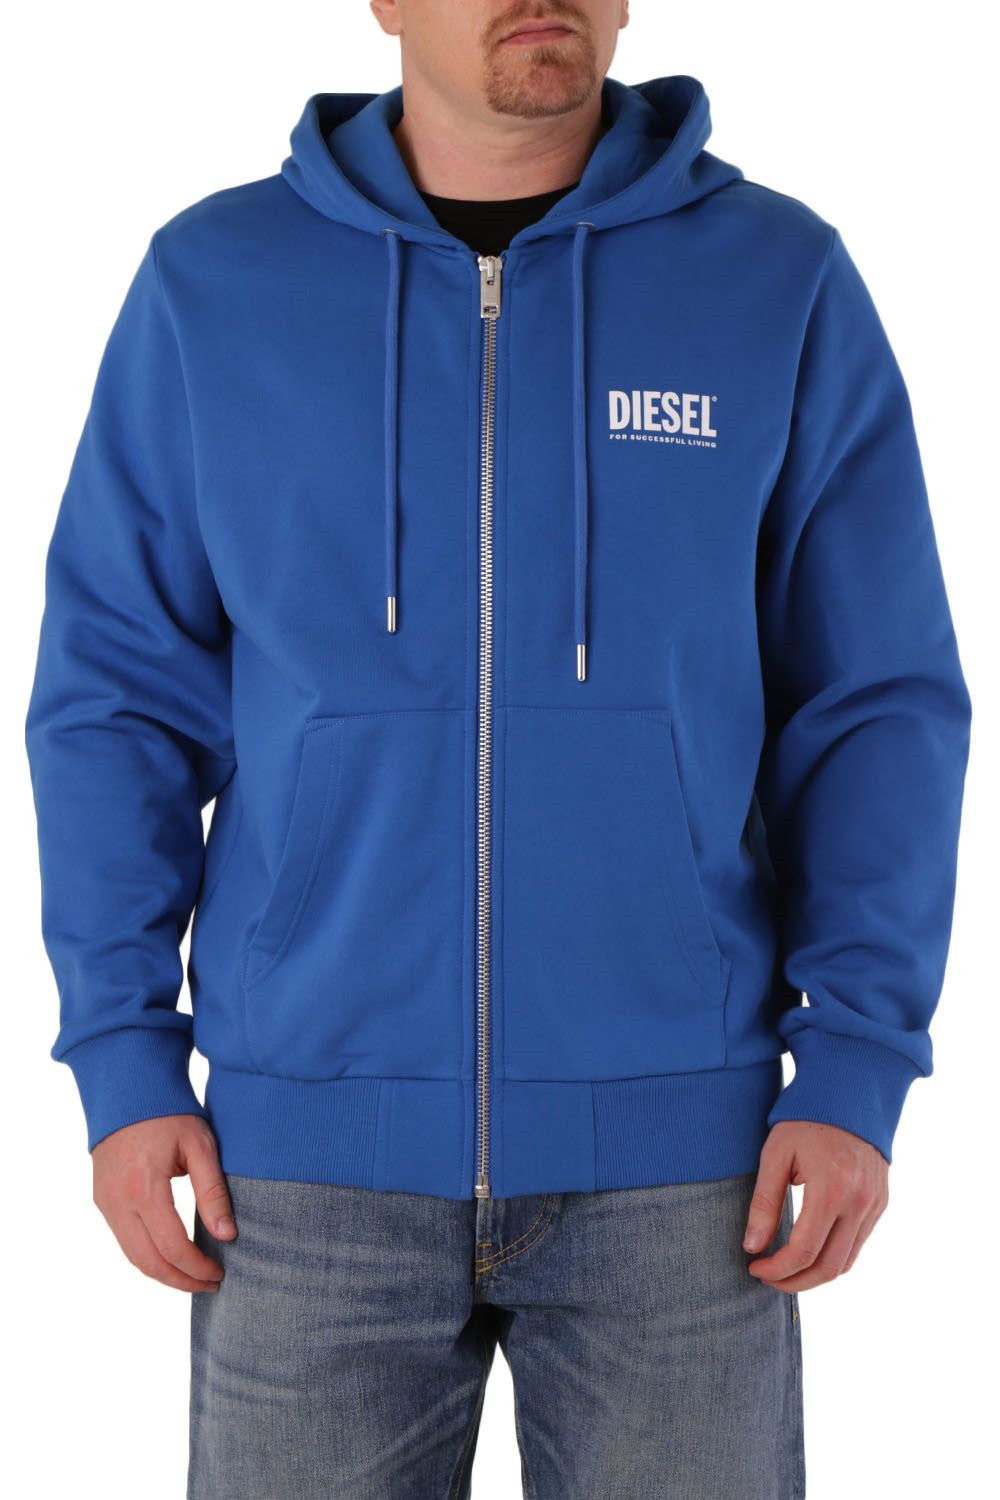 Brand: Diesel   Gender: Men   Type: Sweatshirts   Color: Blue   Pattern: Print   Sleeves: Long Sleeve   Collar: Hood   Fastening: with Zip   Season: All Seasons